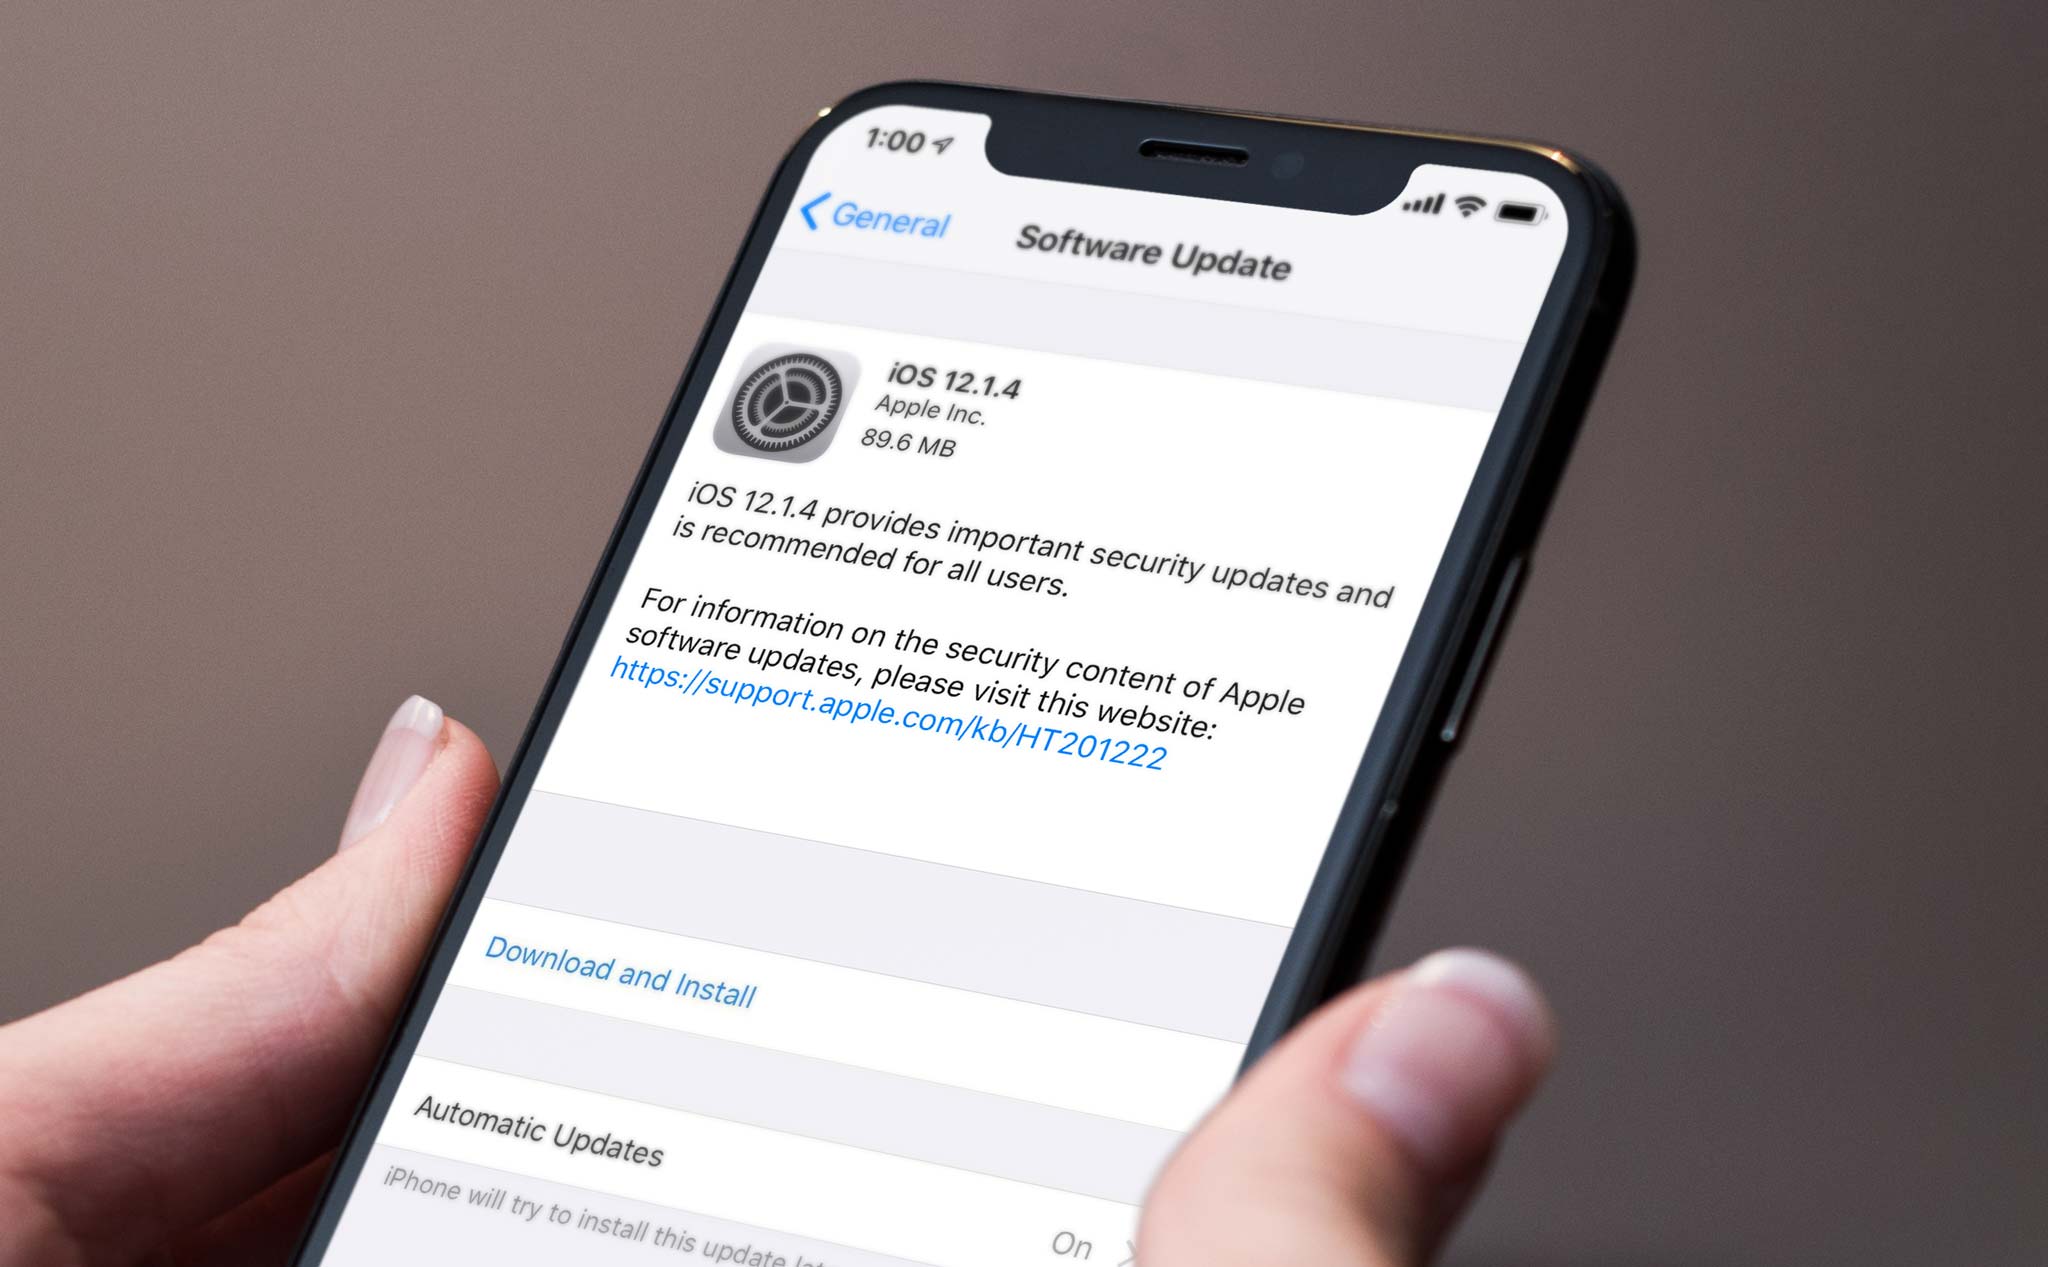 Apple phát hành iOS 12.1.4 sửa lỗi bảo mật Facetime nhóm, lên ngay đi anh em